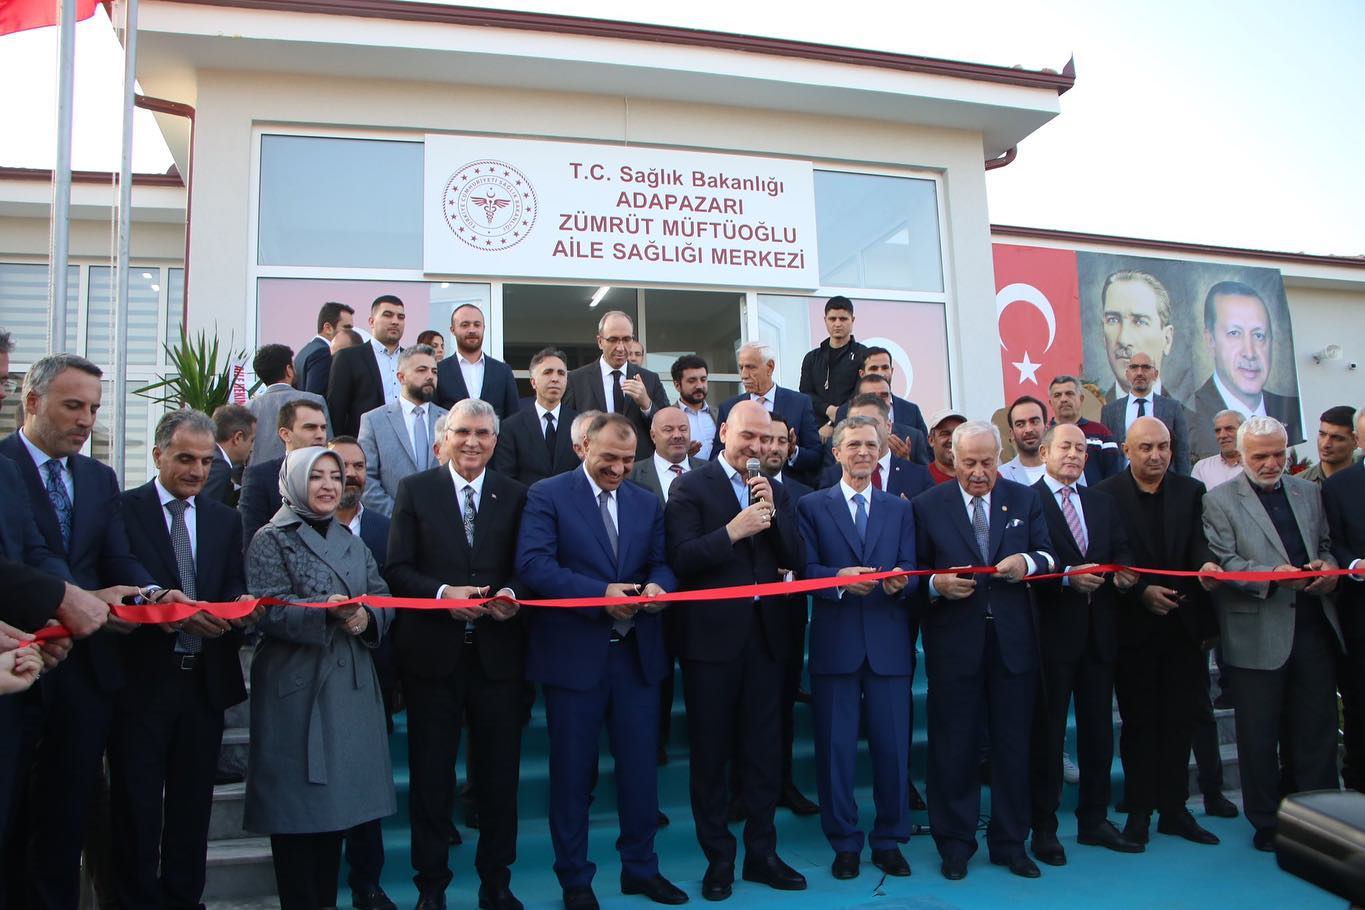 Bakan SOYLU, Zümrüt Müftüoğlu Aile Sağlığı Merkezi açılışına geldi 